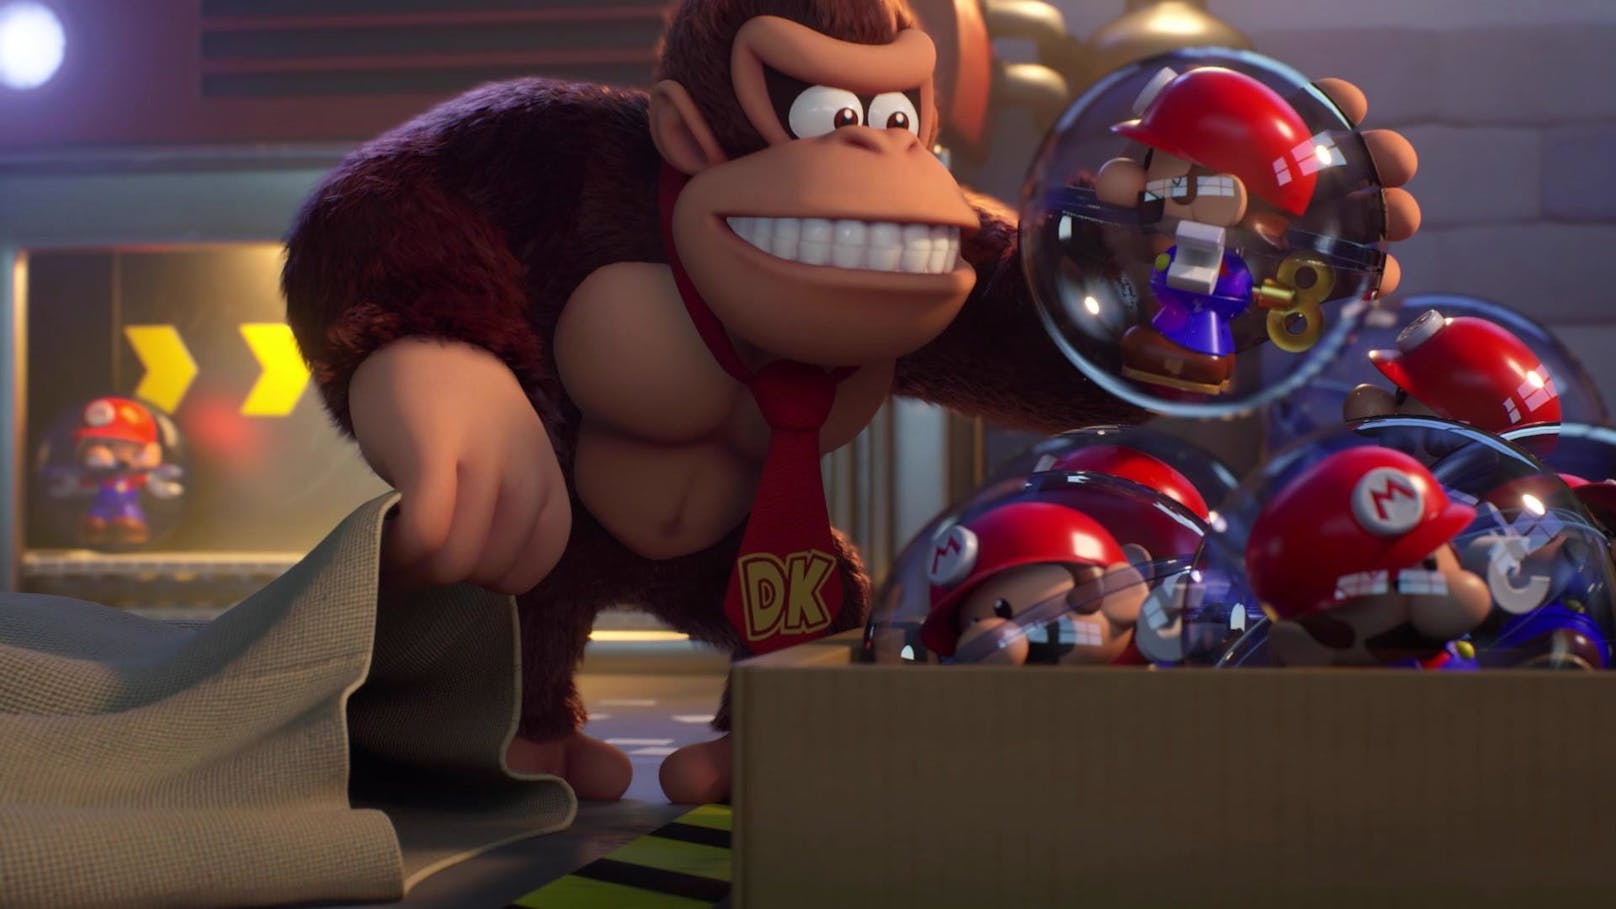 Affenstarkes Duell zwischen Mario und Donkey Kong